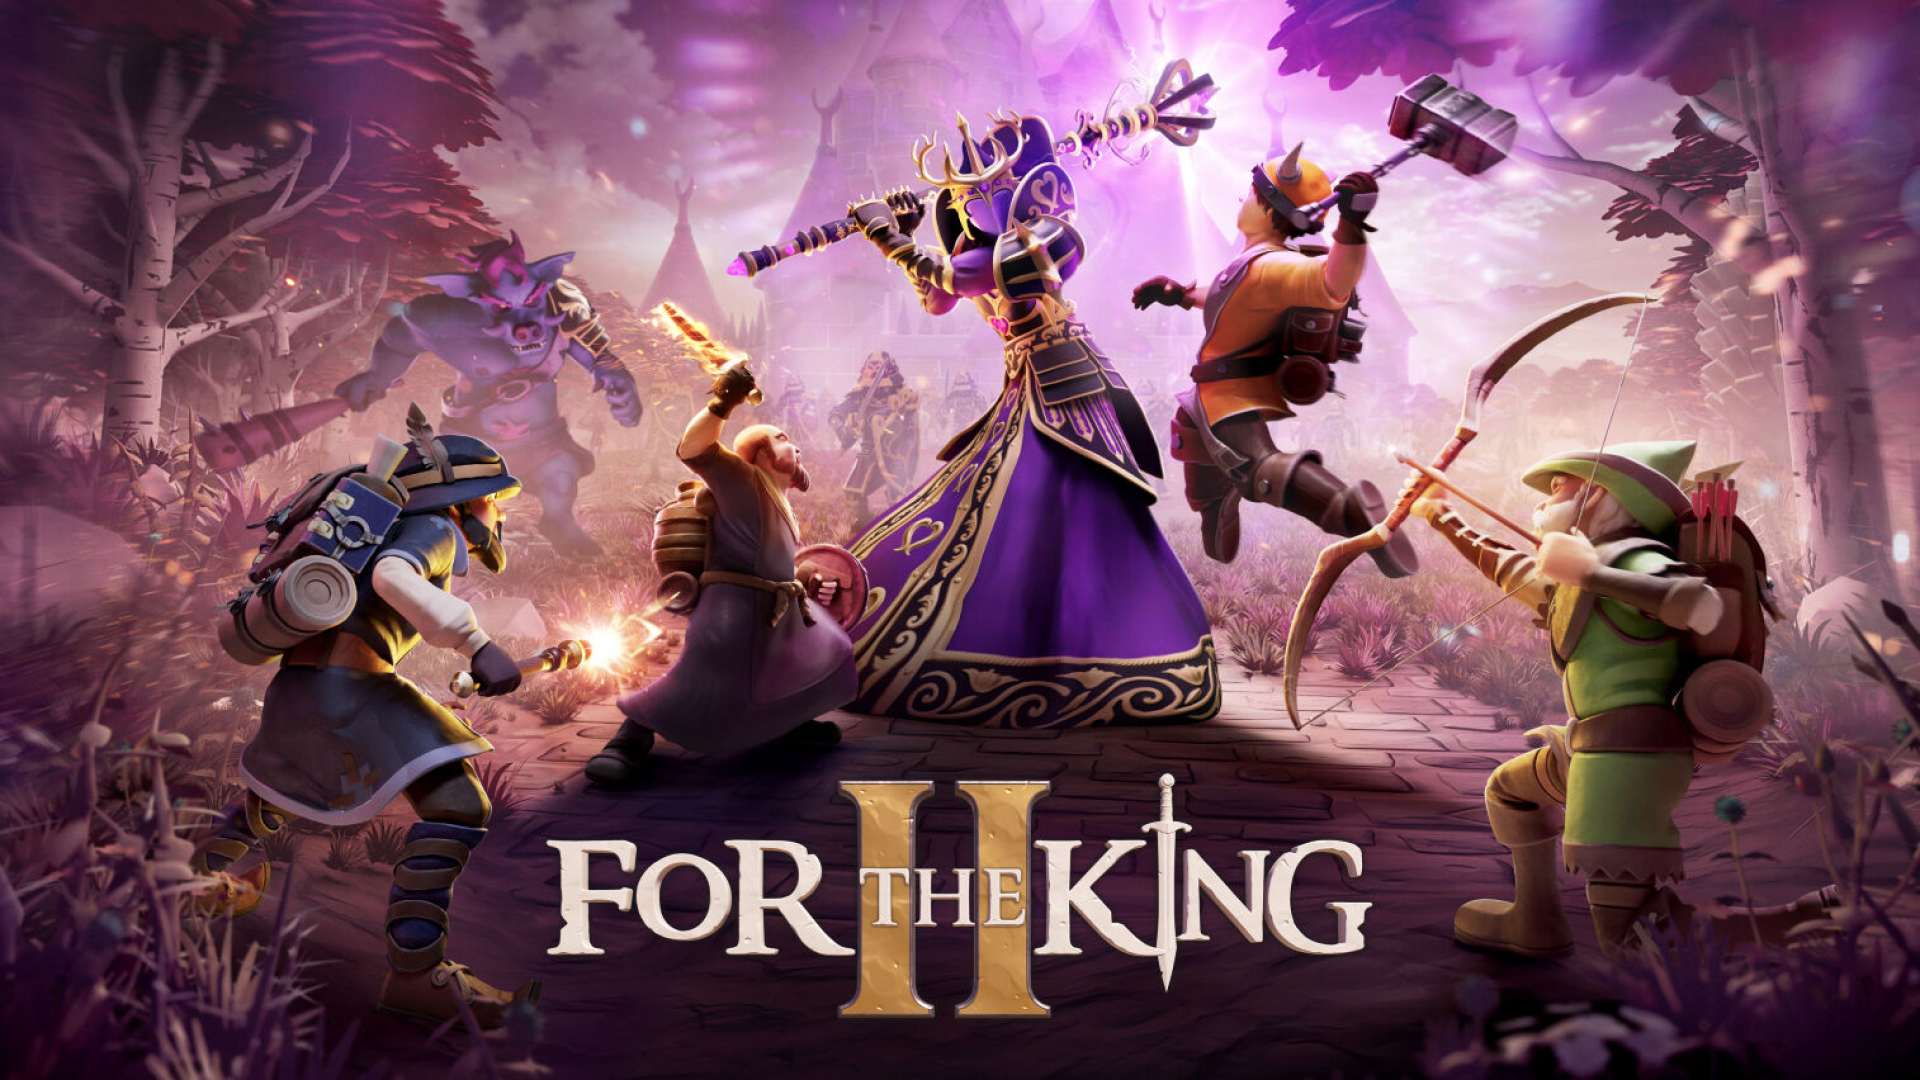 La data di lancio di For the King II è stata annunciata per il 2 novembre